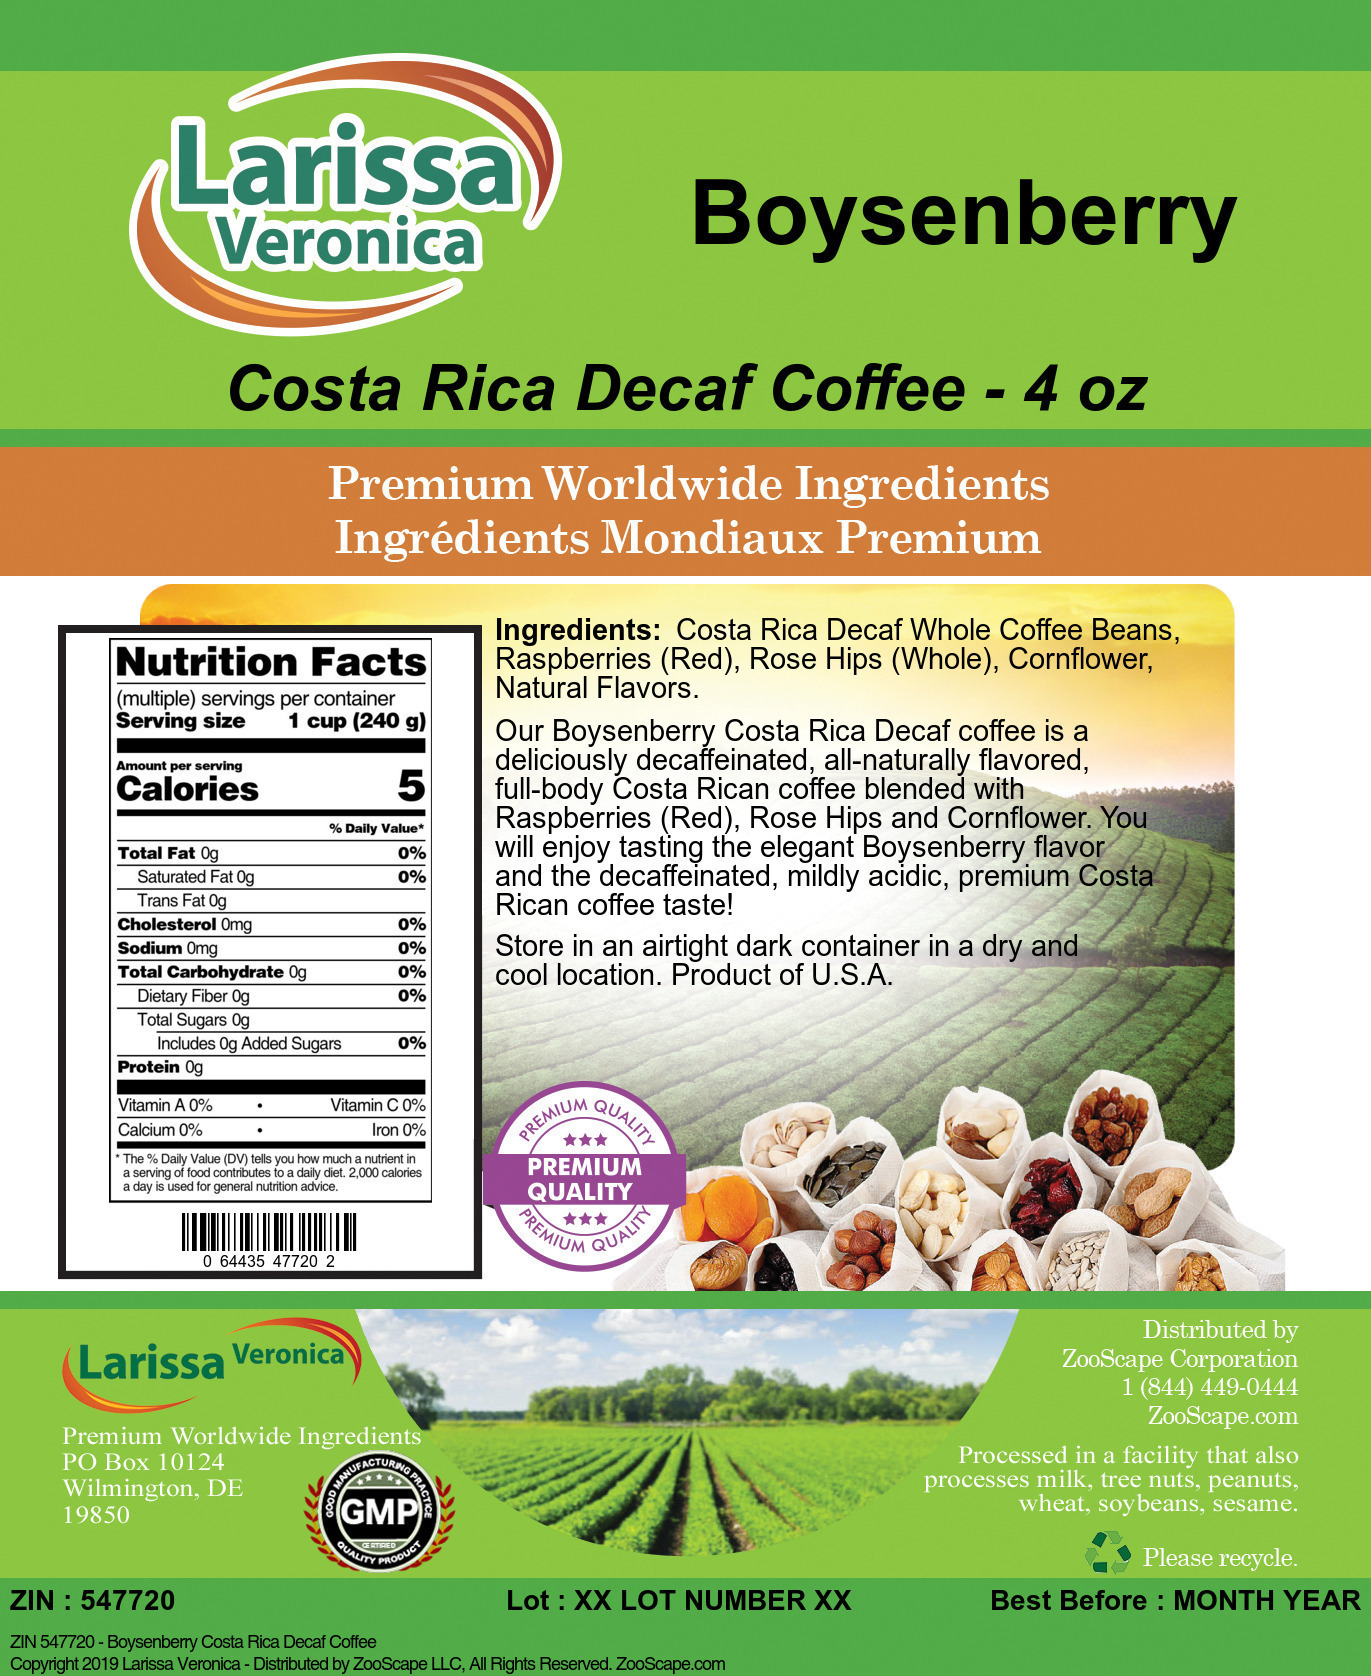 Boysenberry Costa Rica Decaf Coffee - Label